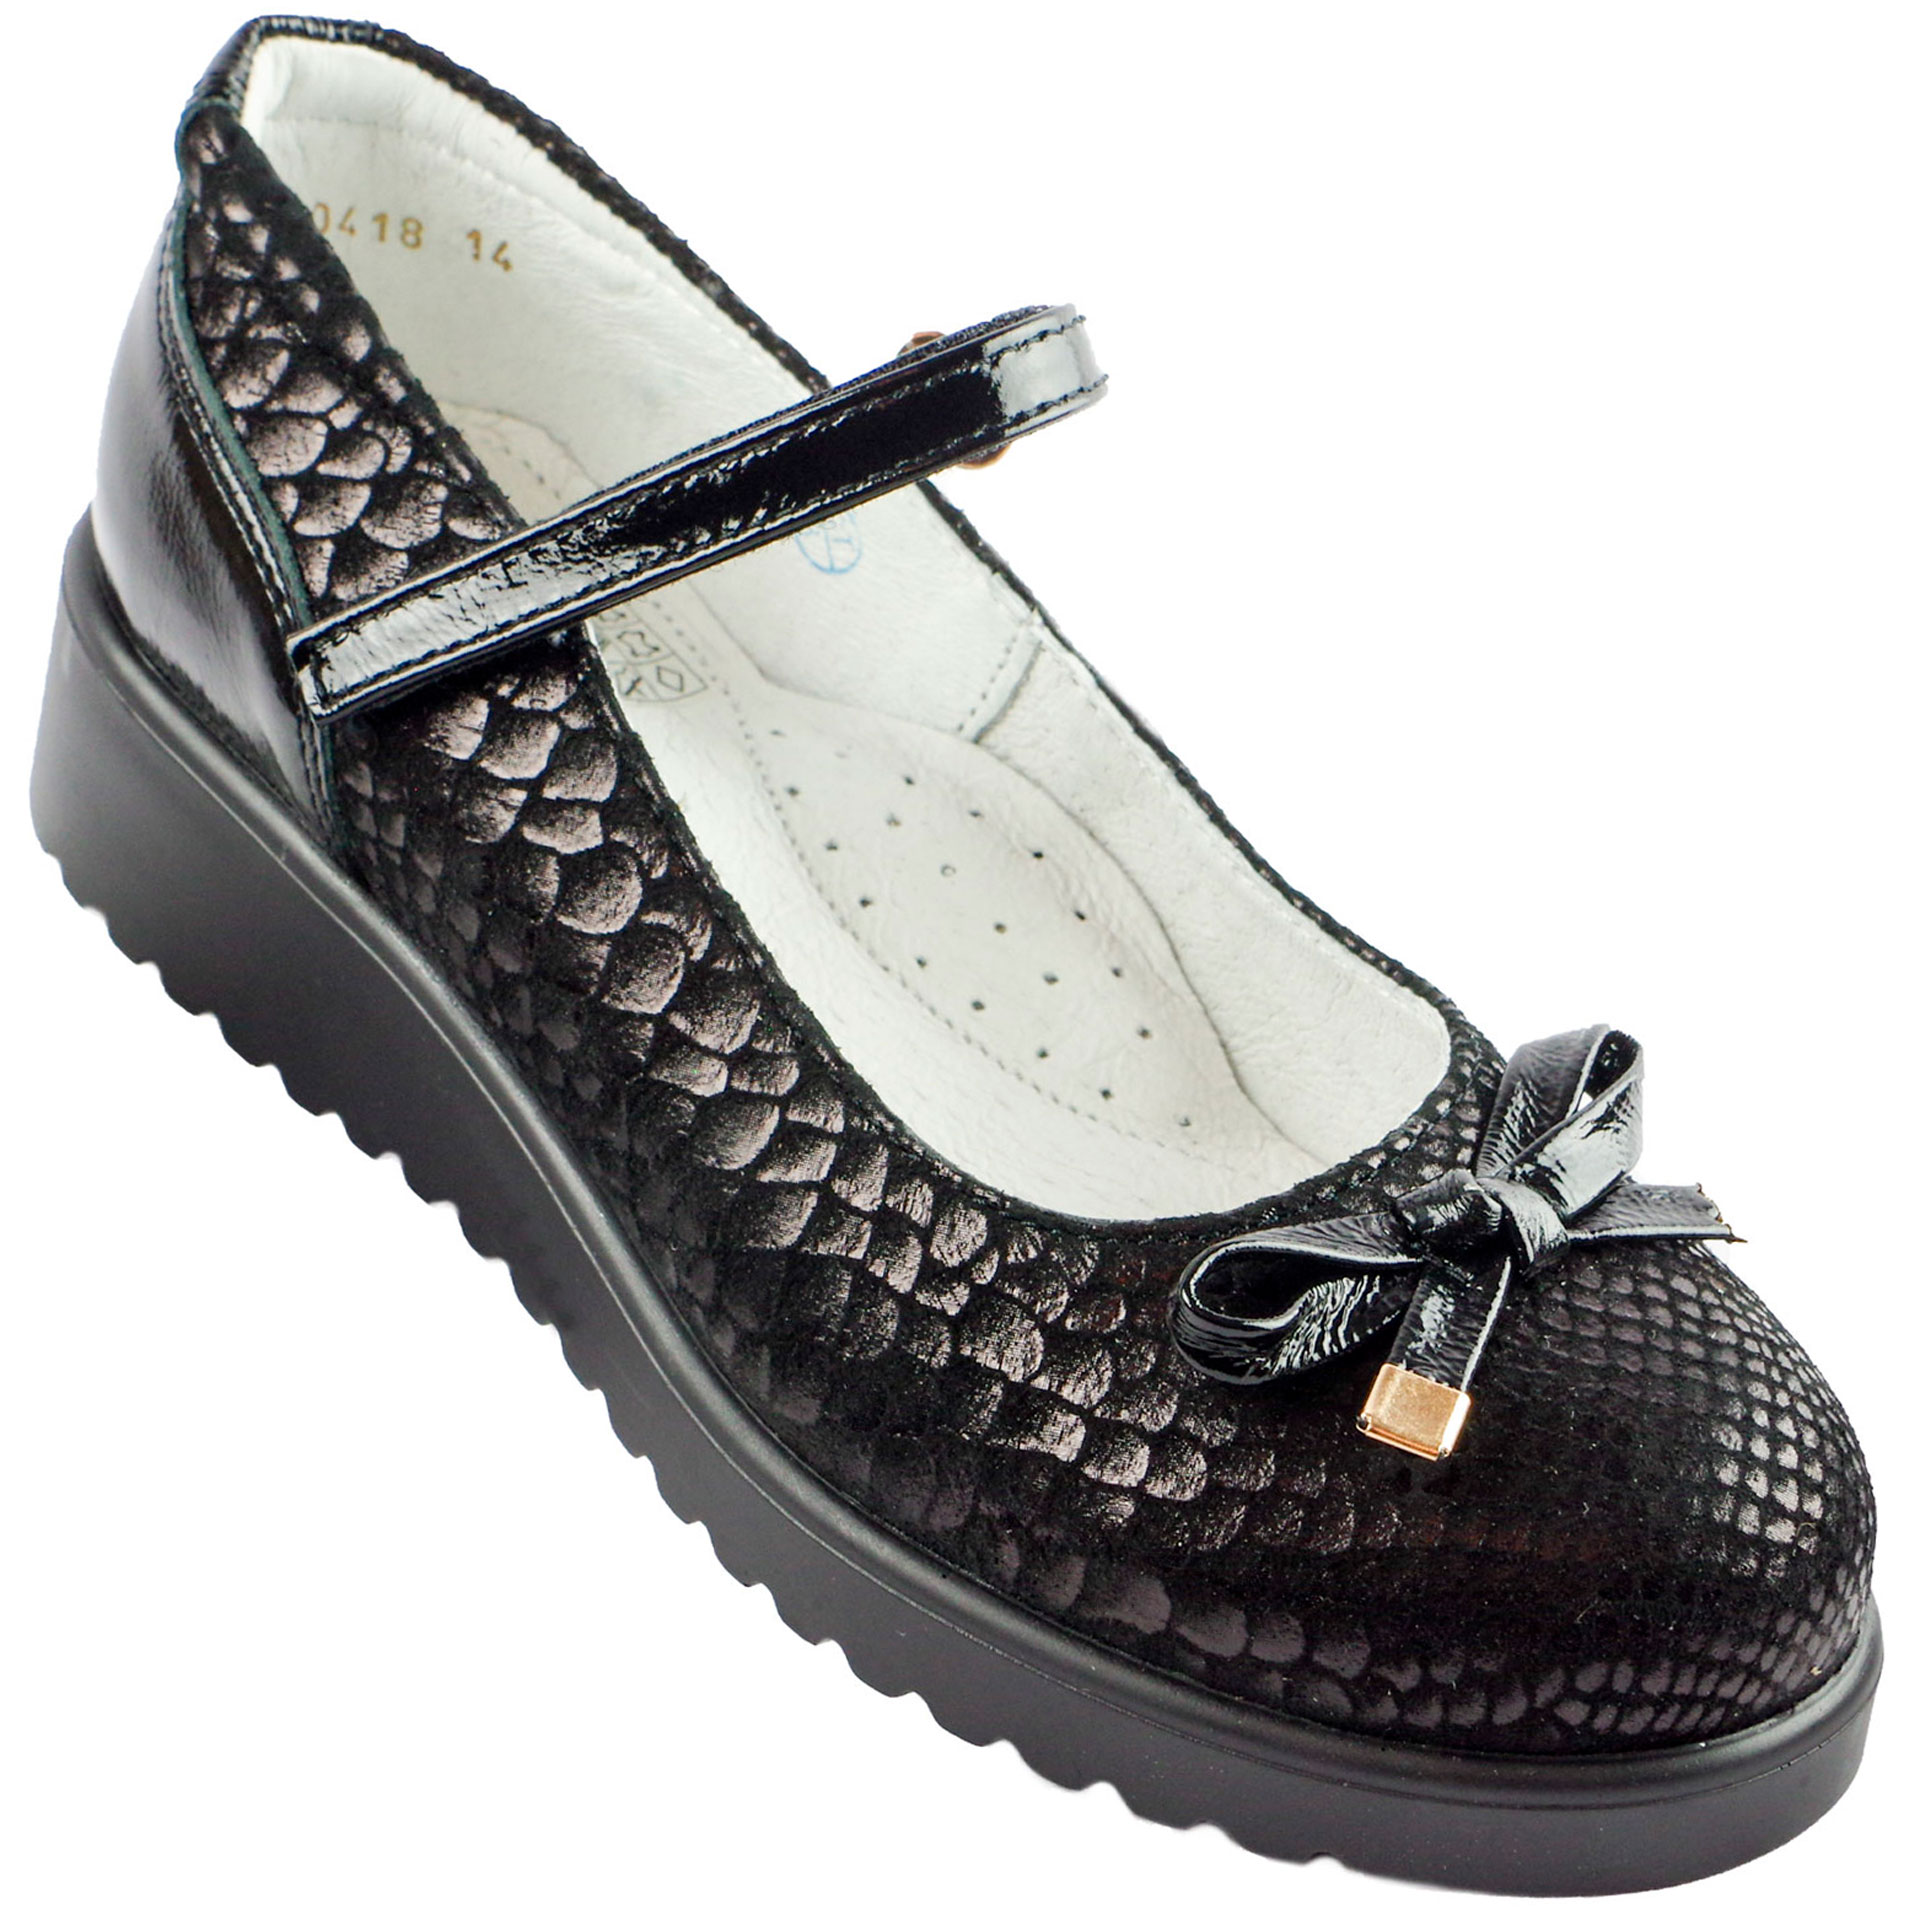 Шкільні туфлі для дівчинки (1572) для дівчинки, матеріал Натуральна шкіра, Чорний колір, 32-37 розміри – Sole Kids